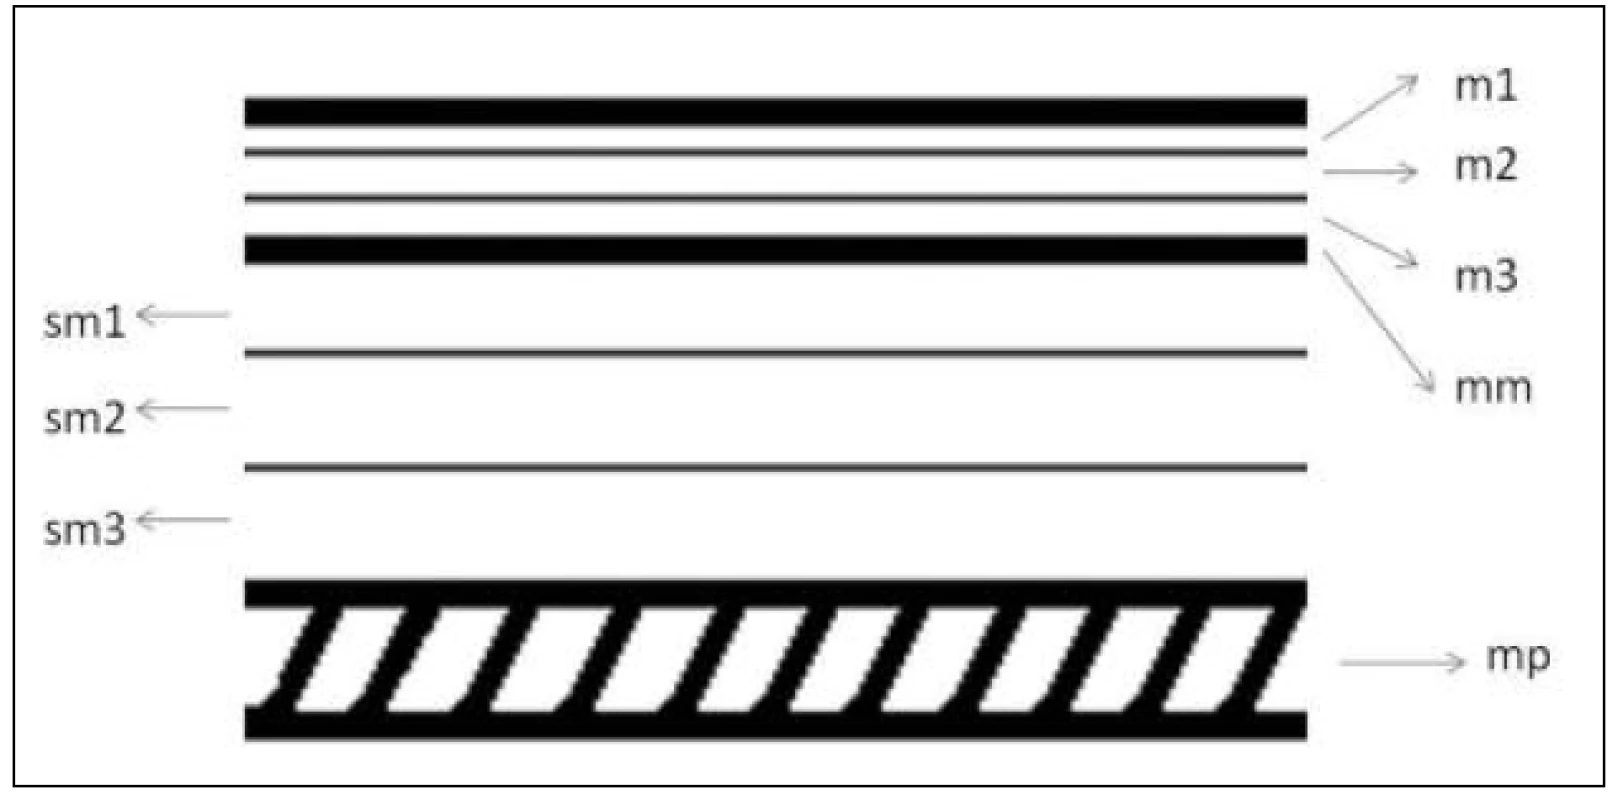 Vrstvy stěny jícnu v histologickém hodnocení – schéma
Fig. 1: Oesophageal wall layers in histological evaluation – diagram
